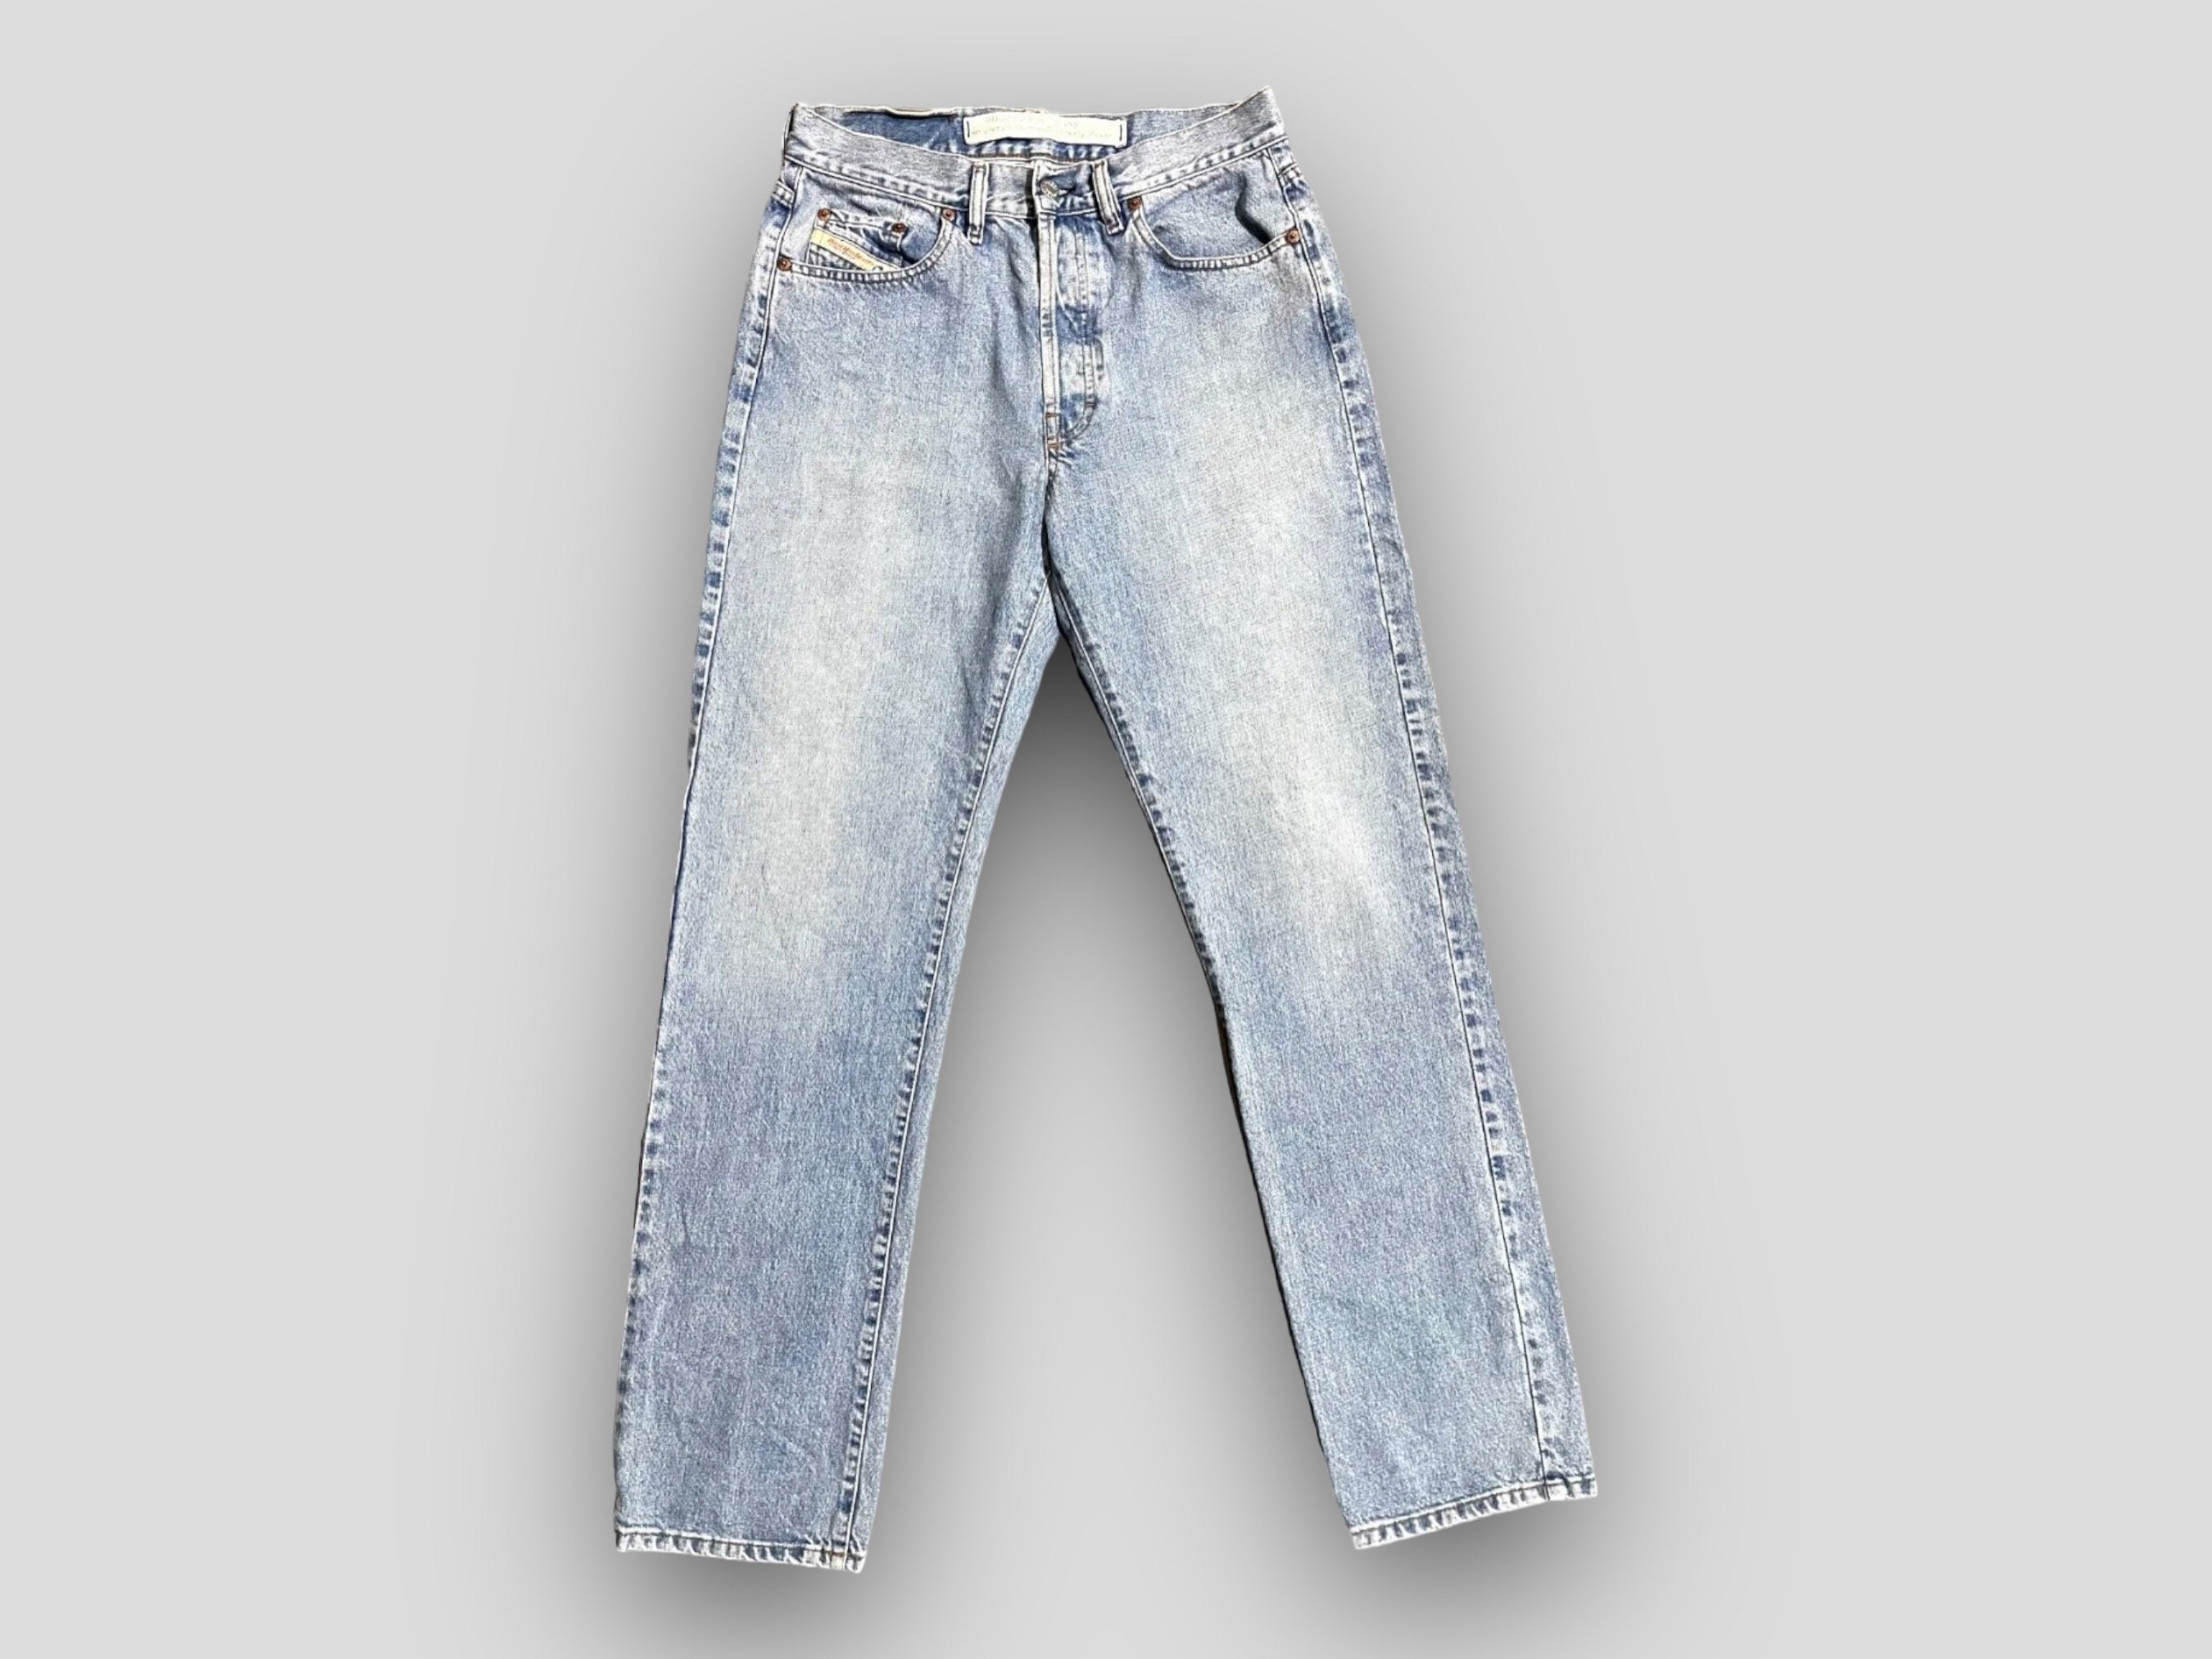 Louis Vuitton - Authenticated Jean - Denim - Jeans Blue Plain for Women, Very Good Condition